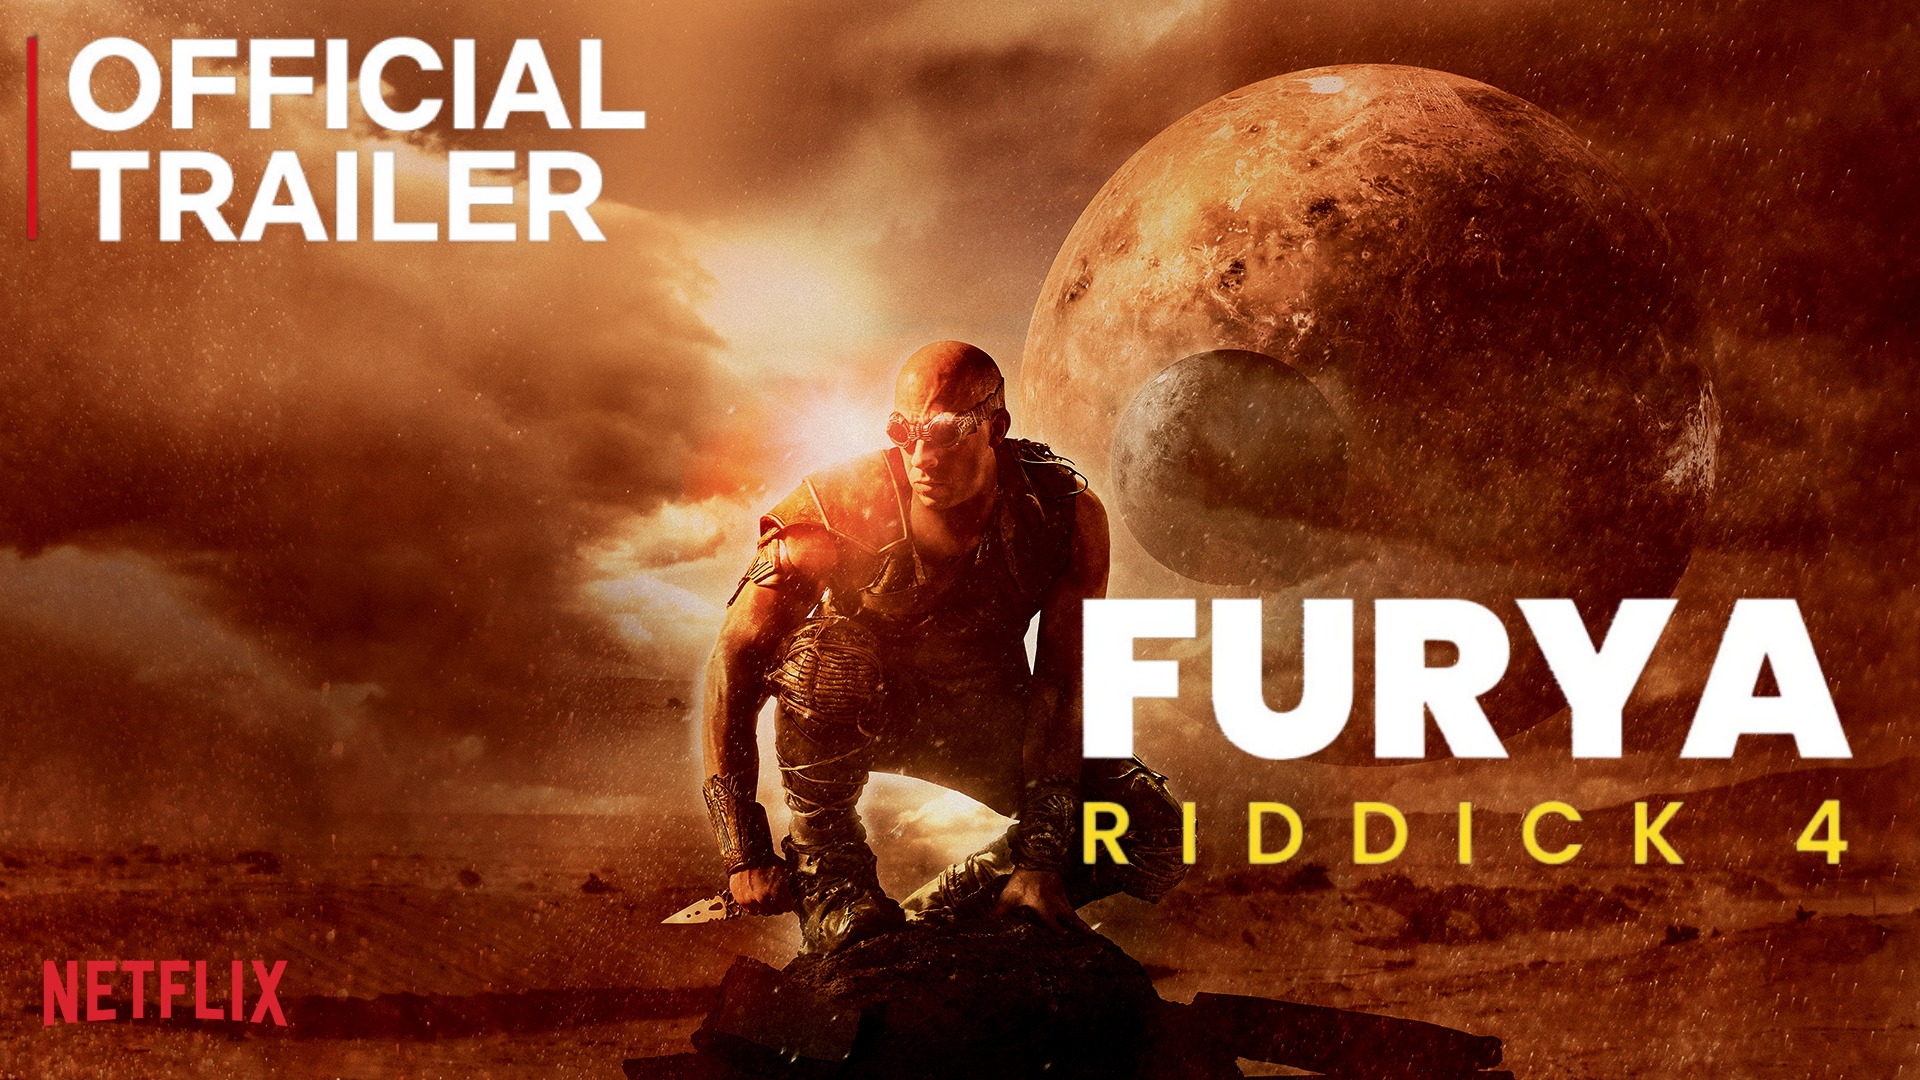 Riddick 4 Furya Teaser 2024 With Vin Diesel And Katee Sackhoff 2317